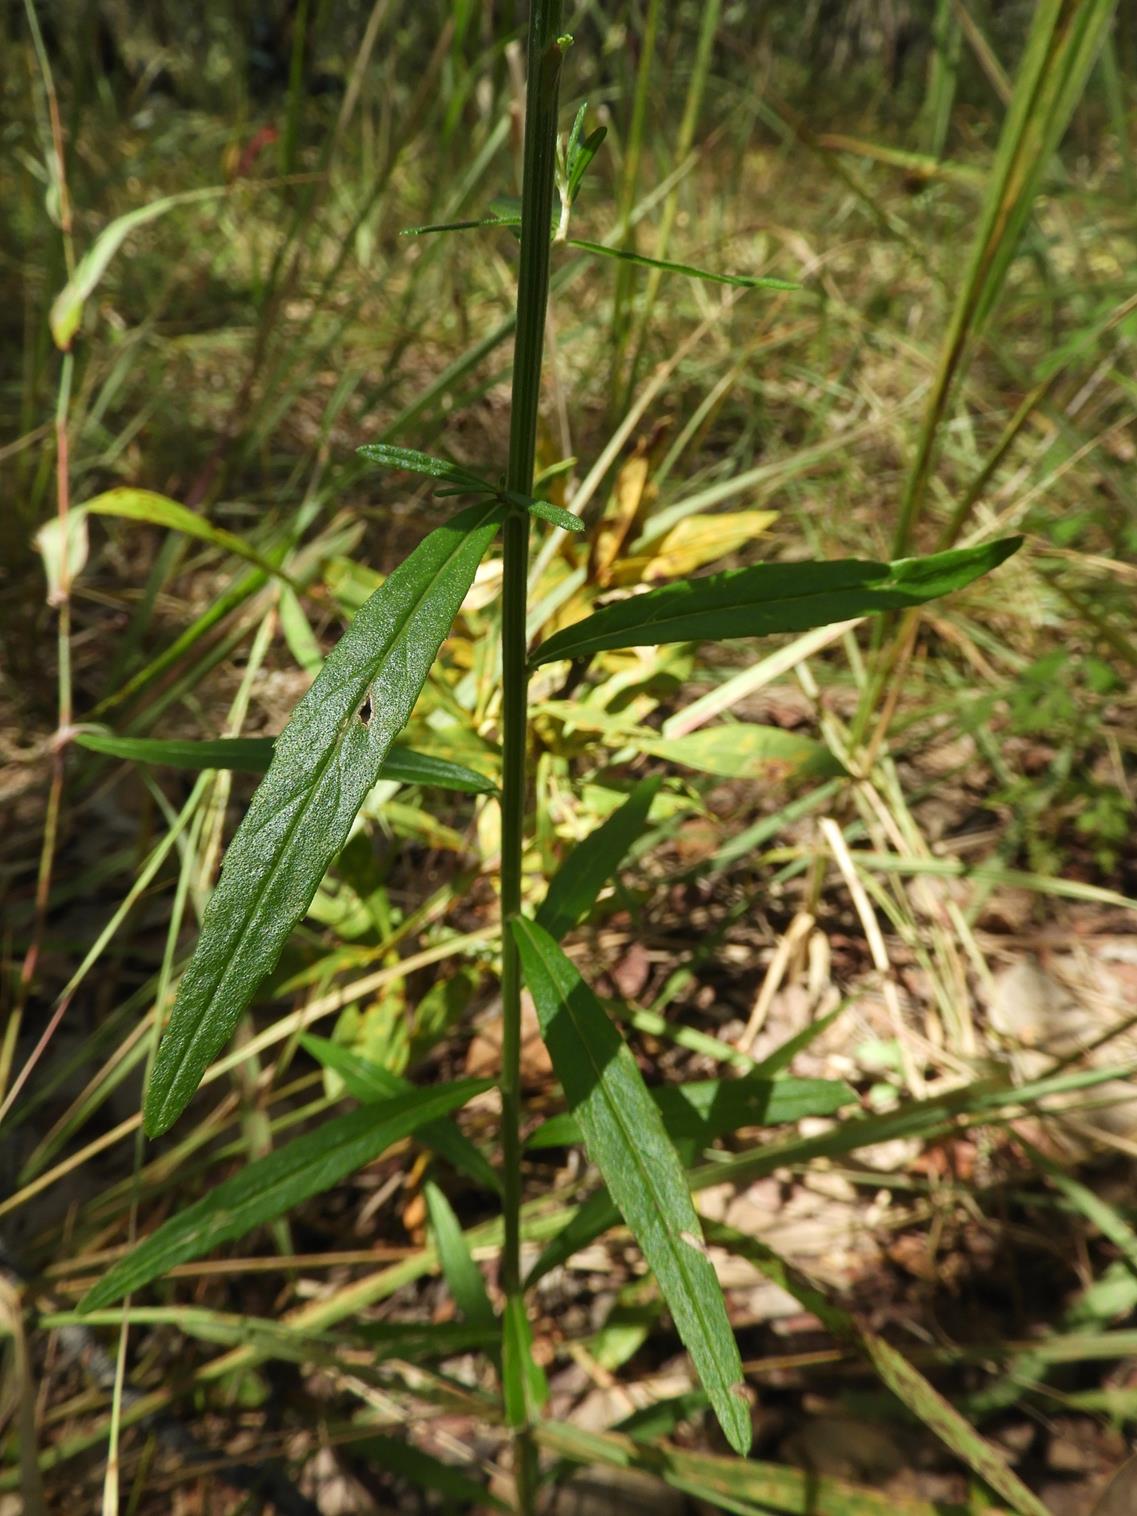 Vernonia jelfiae var. albida